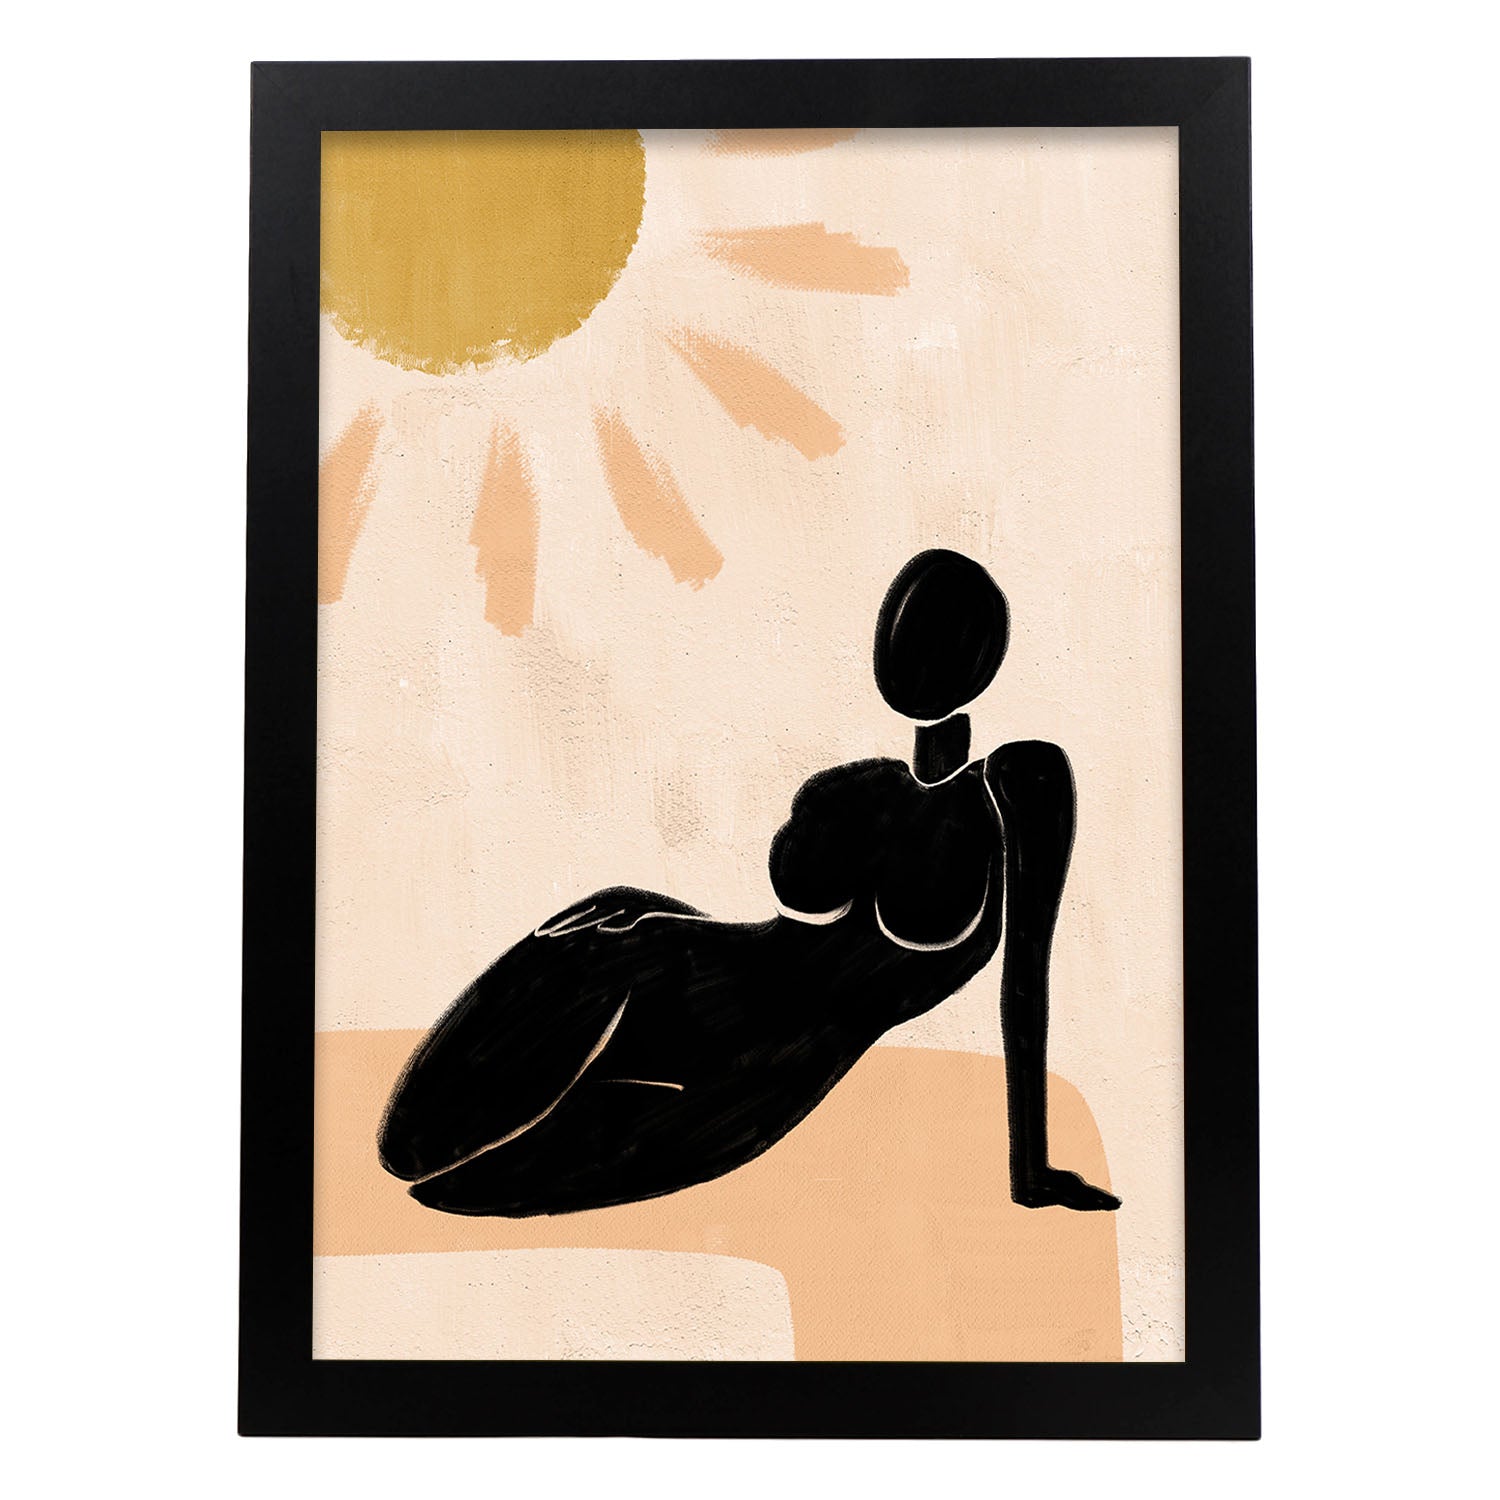 Poster con ilustracion de mujer. Dibujos con formas, caras, cuerpos y gestos de mujeres. 'Mujeres 2'.-Artwork-Nacnic-A3-Marco Negro-Nacnic Estudio SL